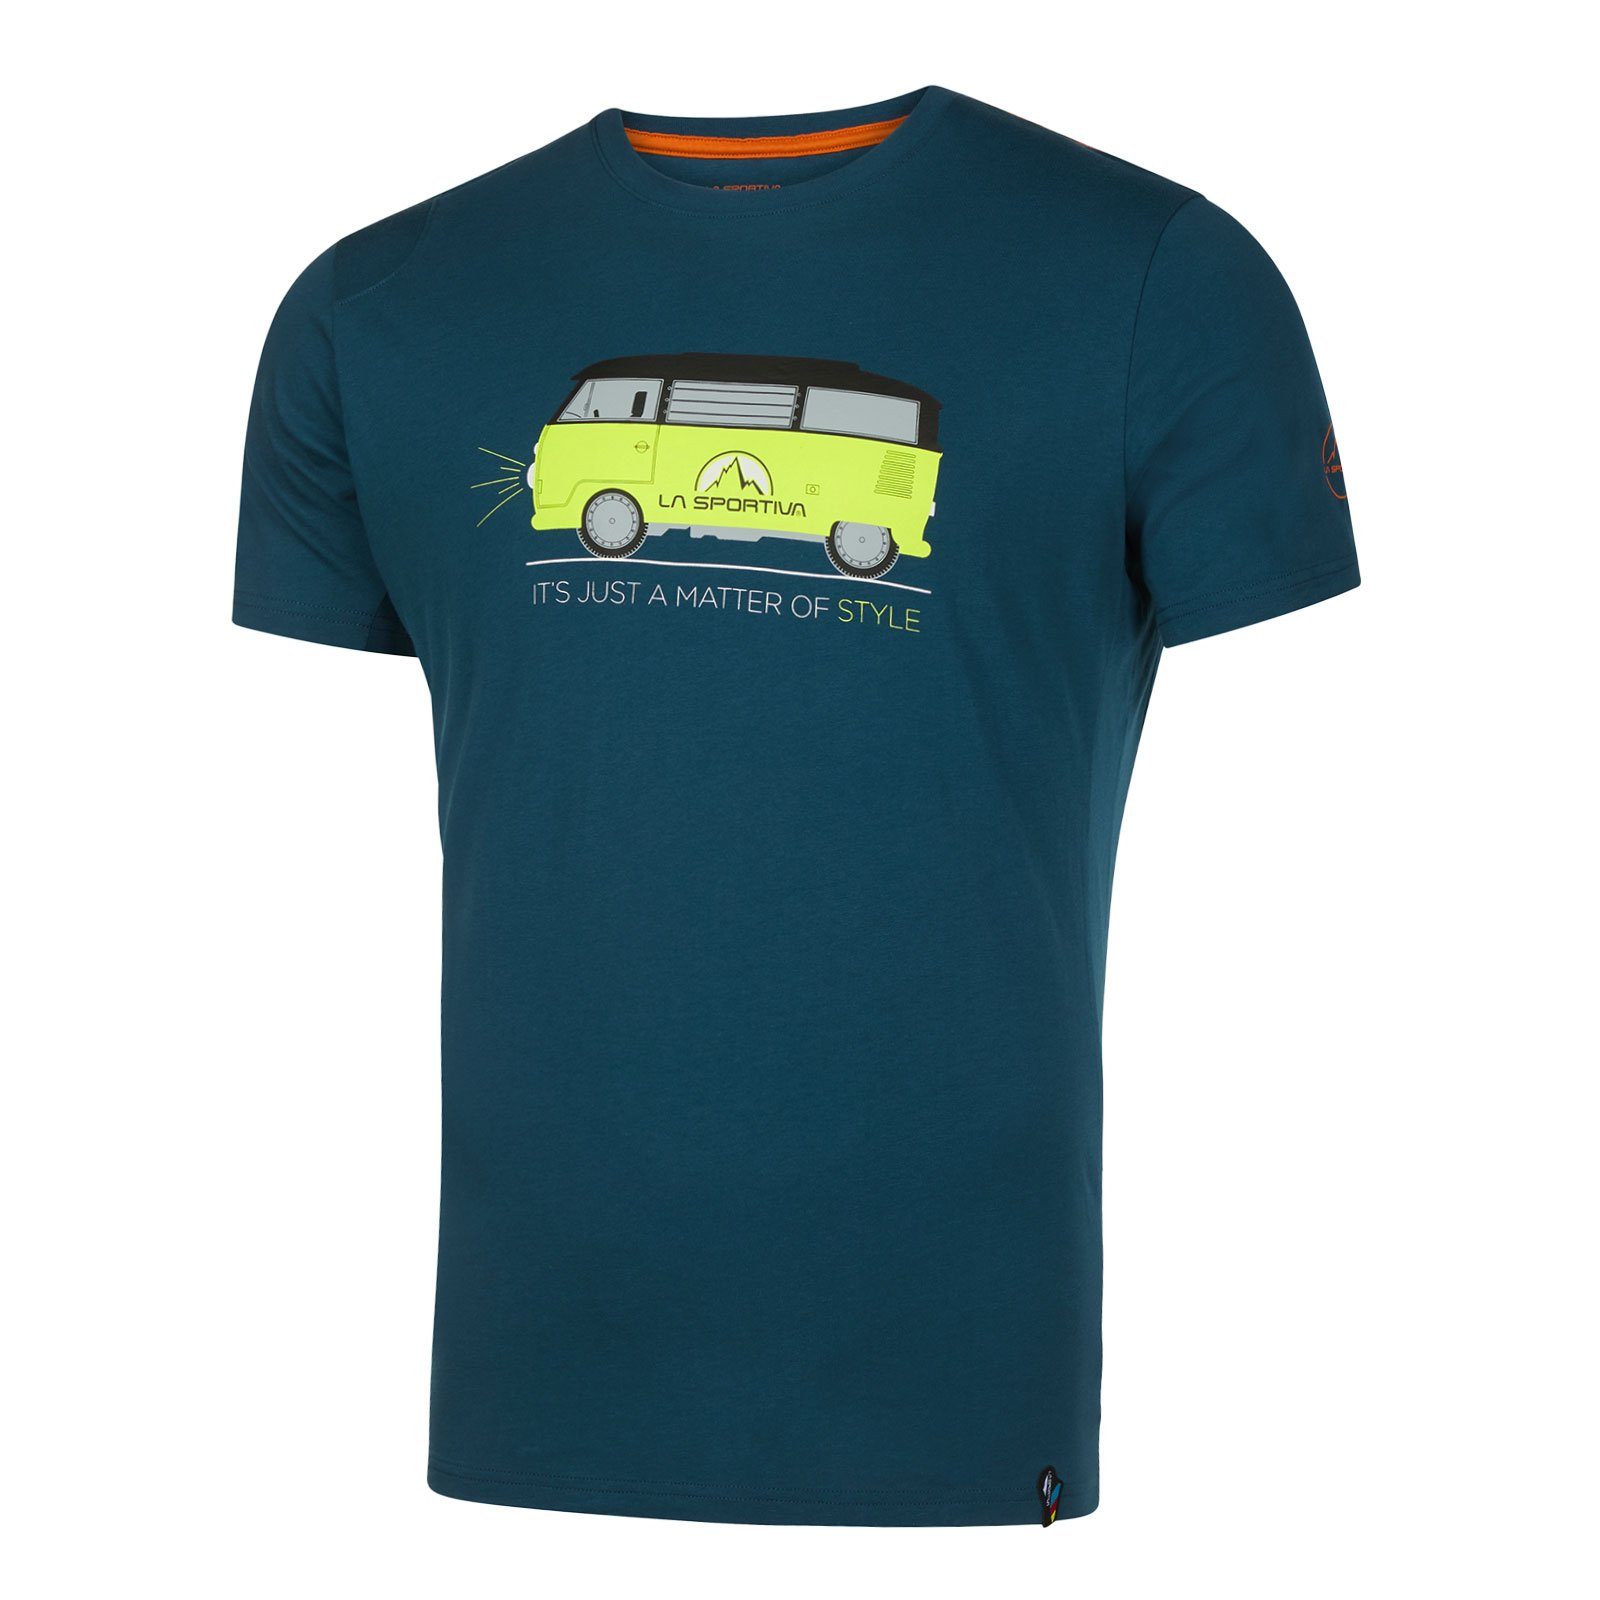 La Sportiva T-Shirt Van 639639 Baumwolle storm M organischer 100% aus blue